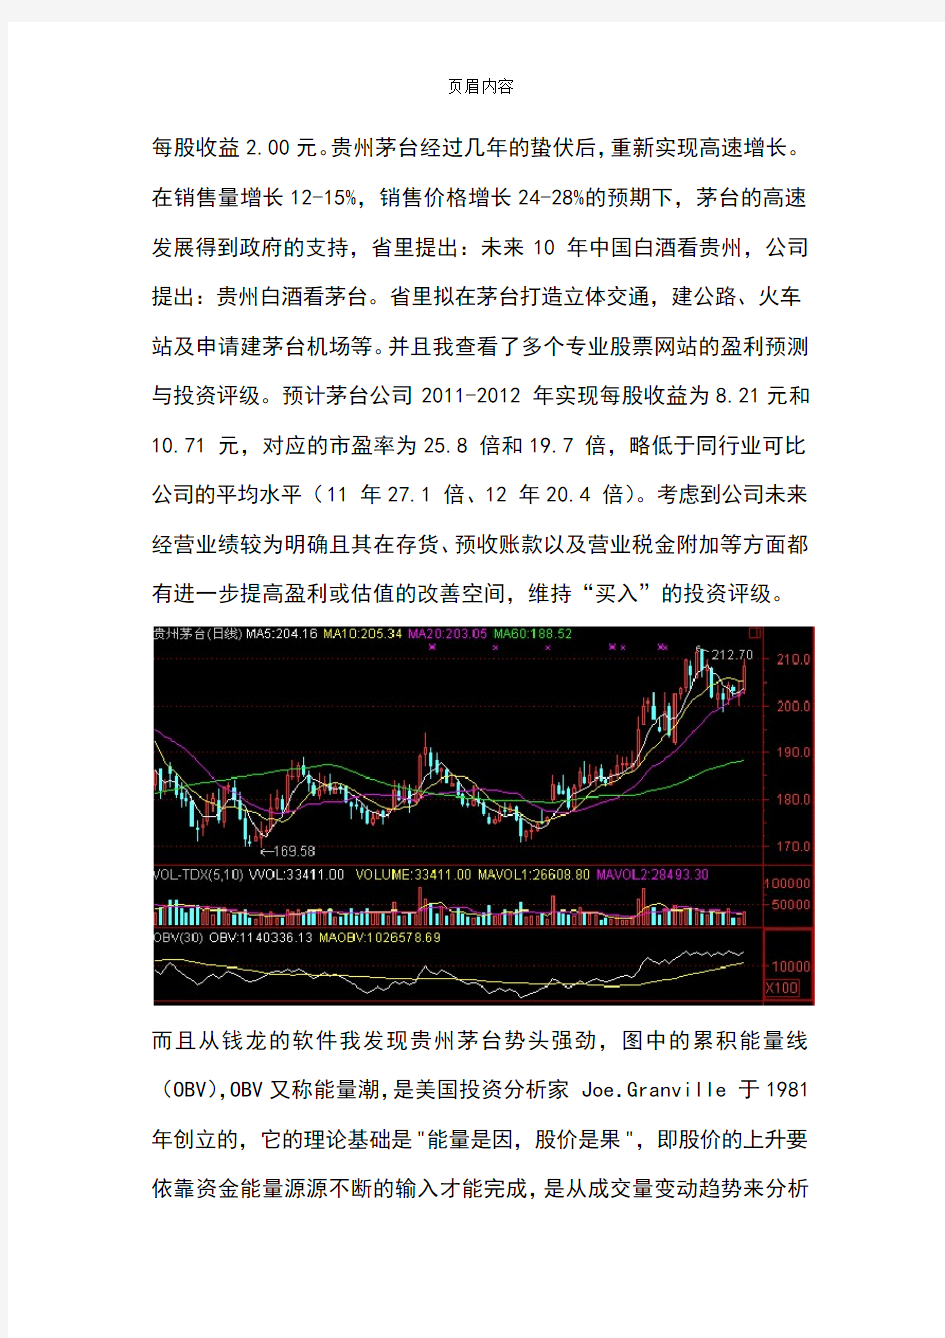 贵州茅台股票研究分析报告